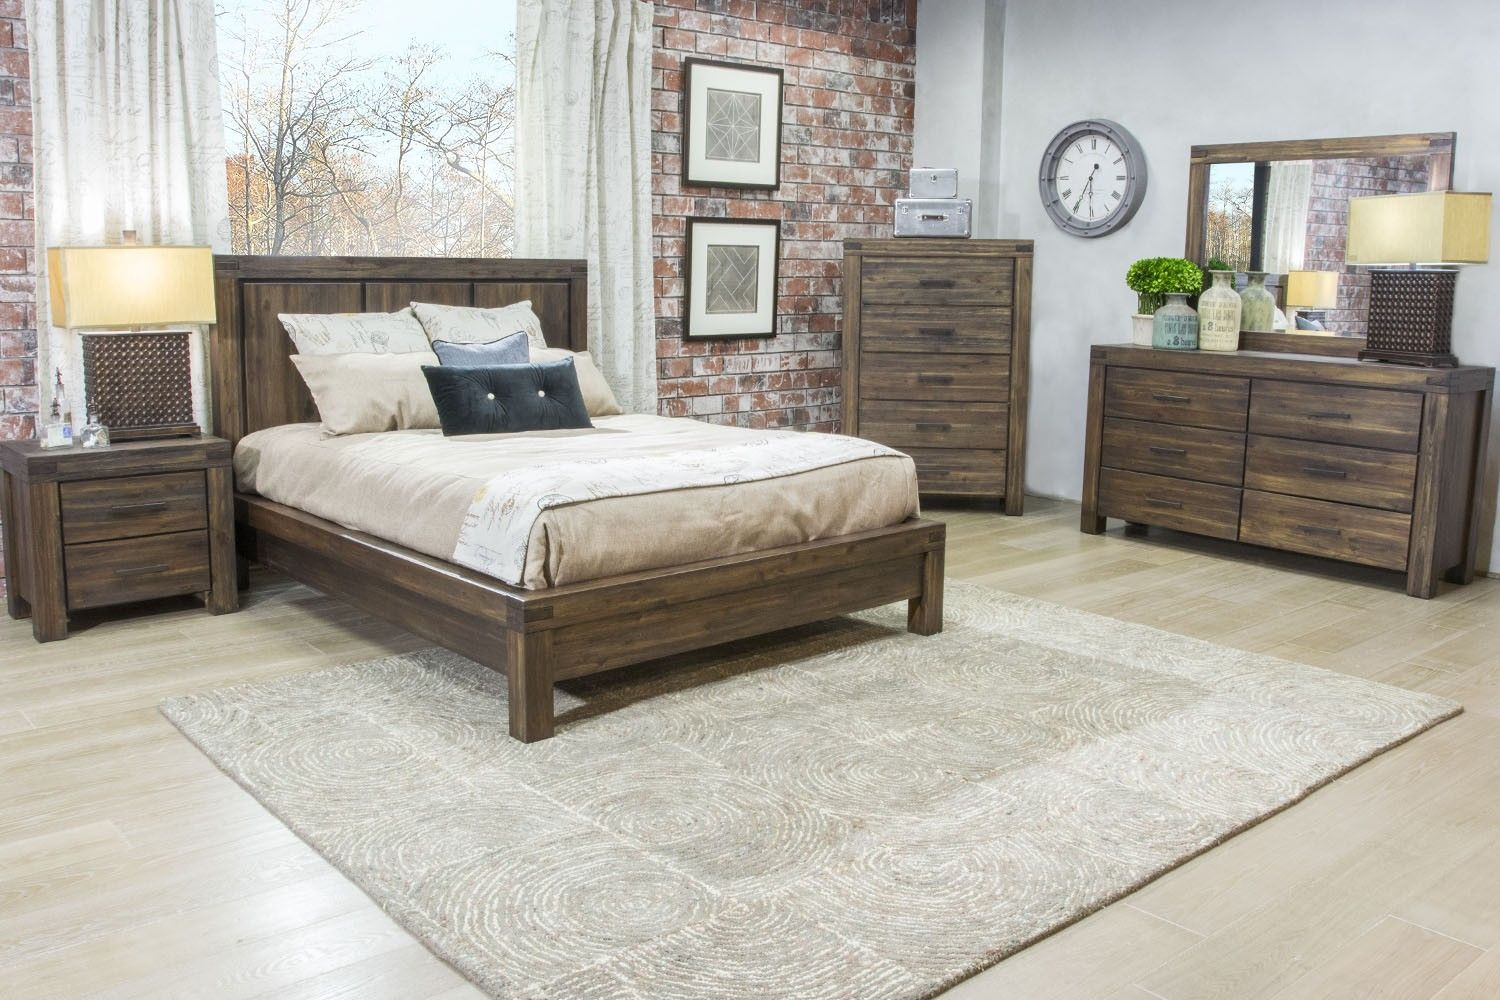 mor bedroom furniture set